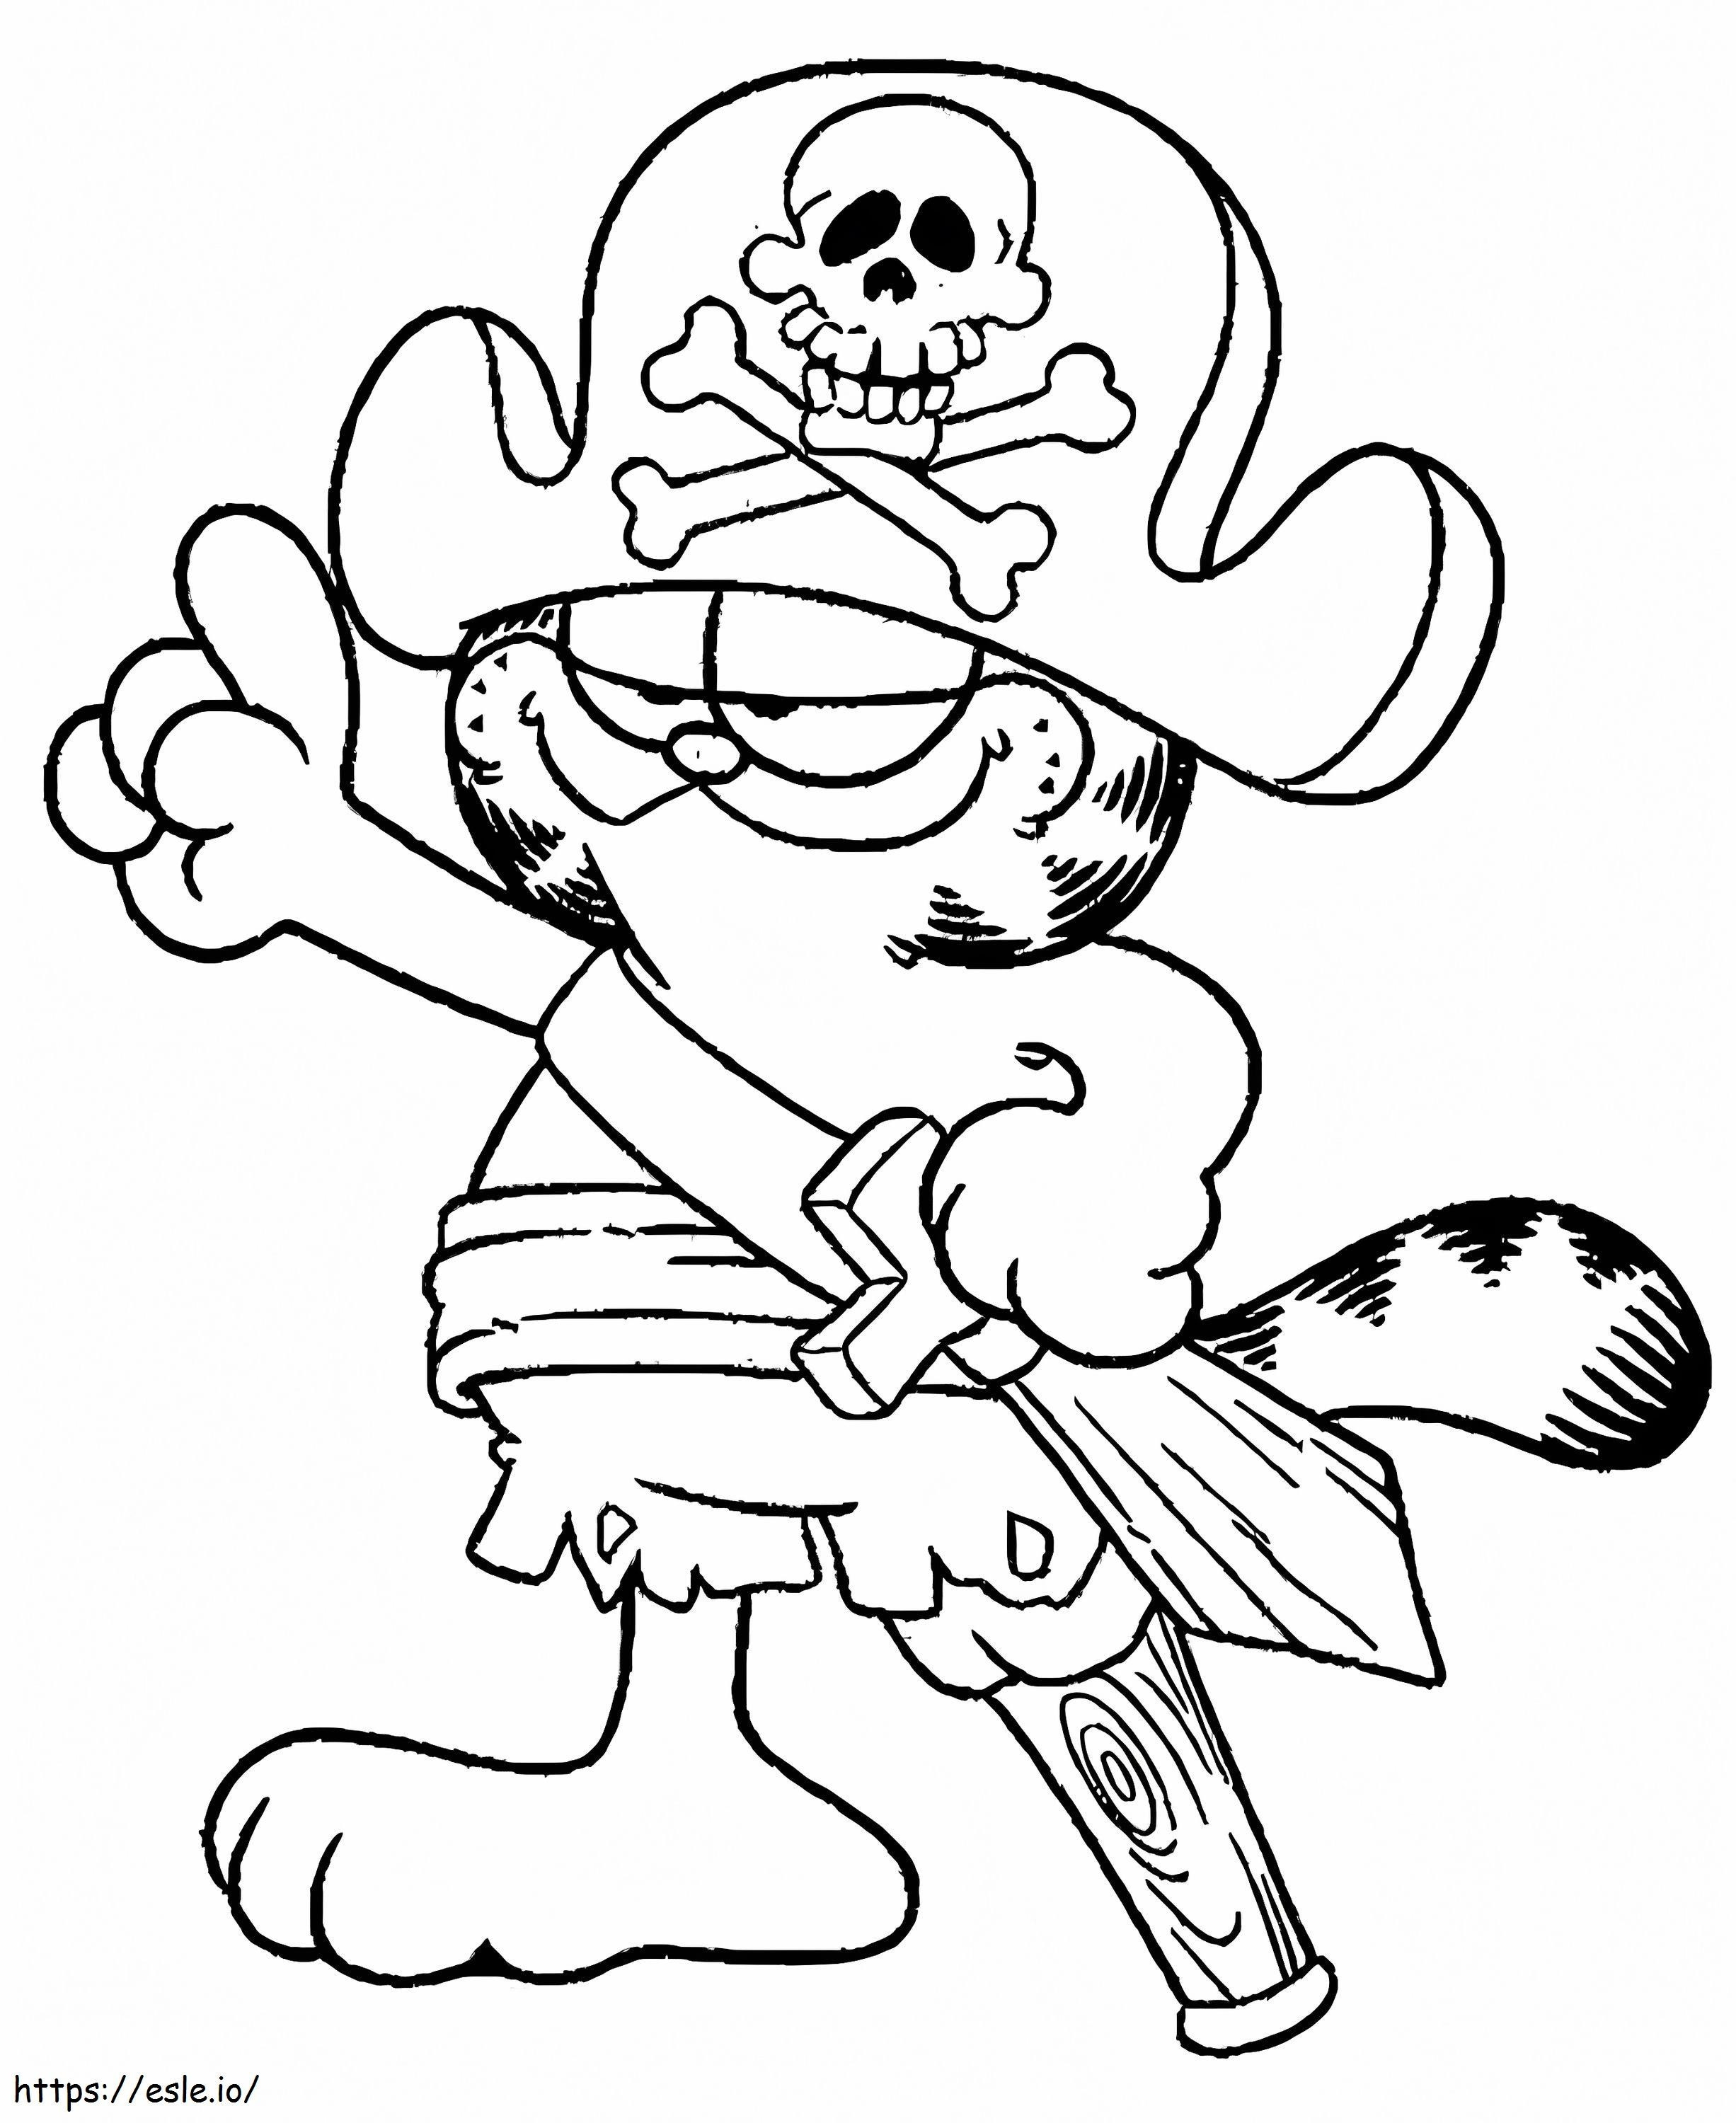 Garfield-piraten kleurplaat kleurplaat